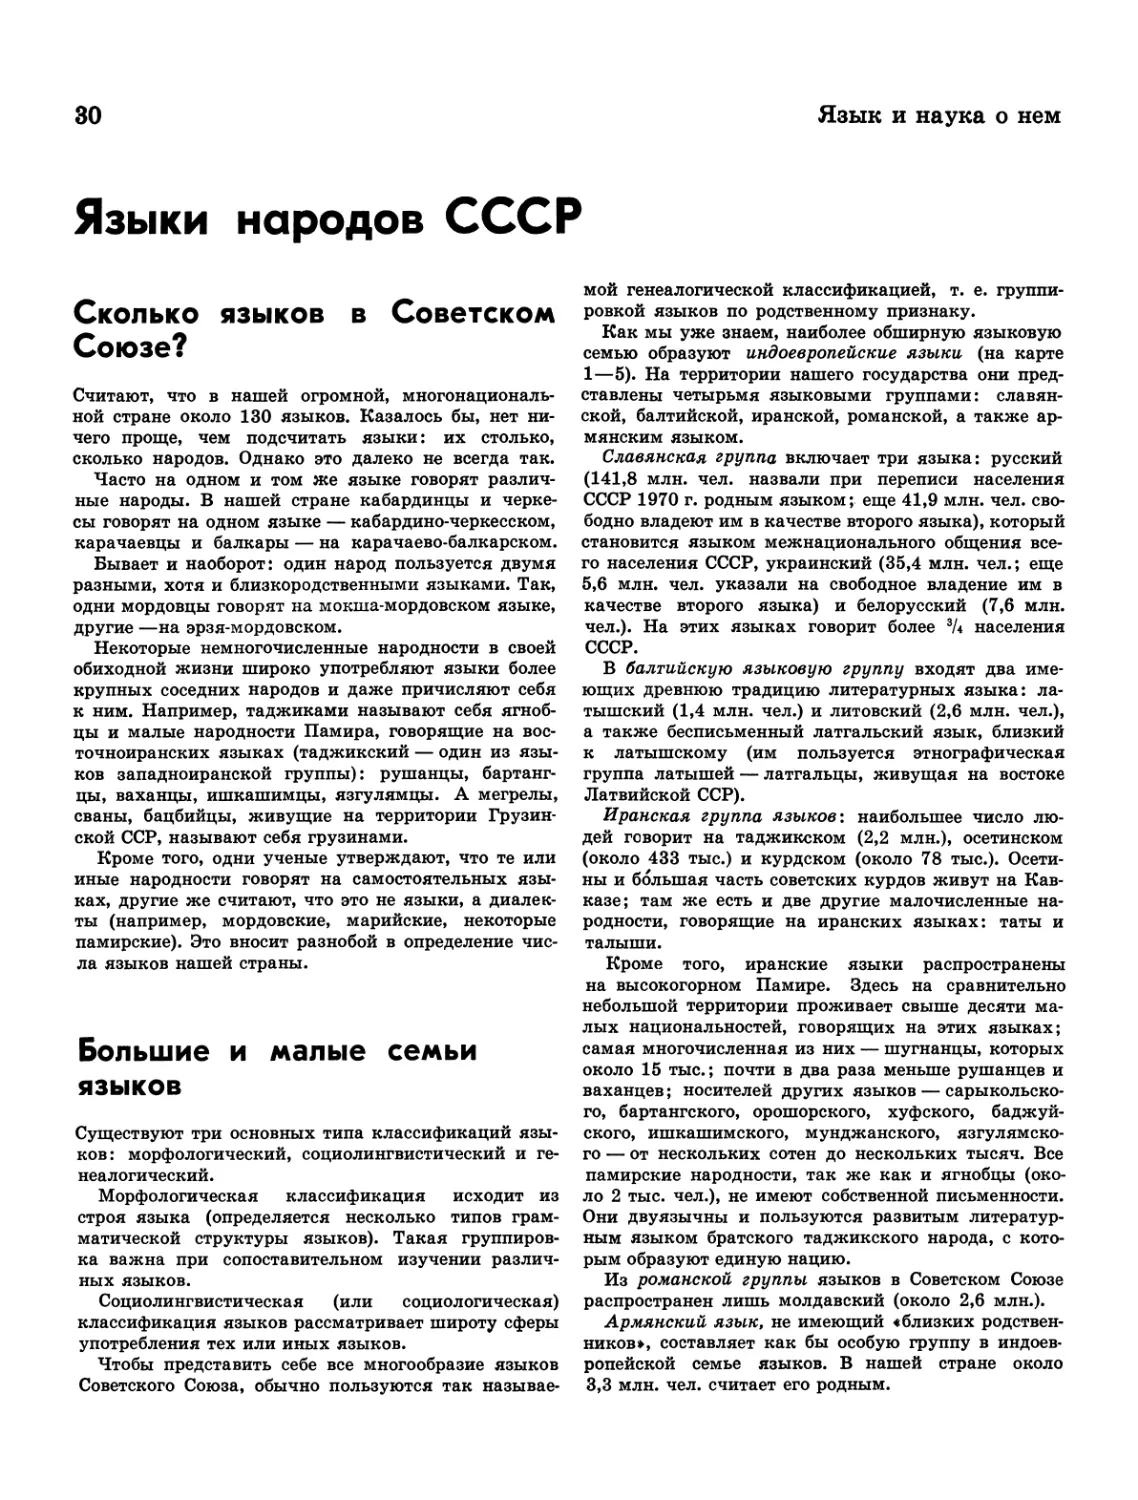 Языки народов СССР